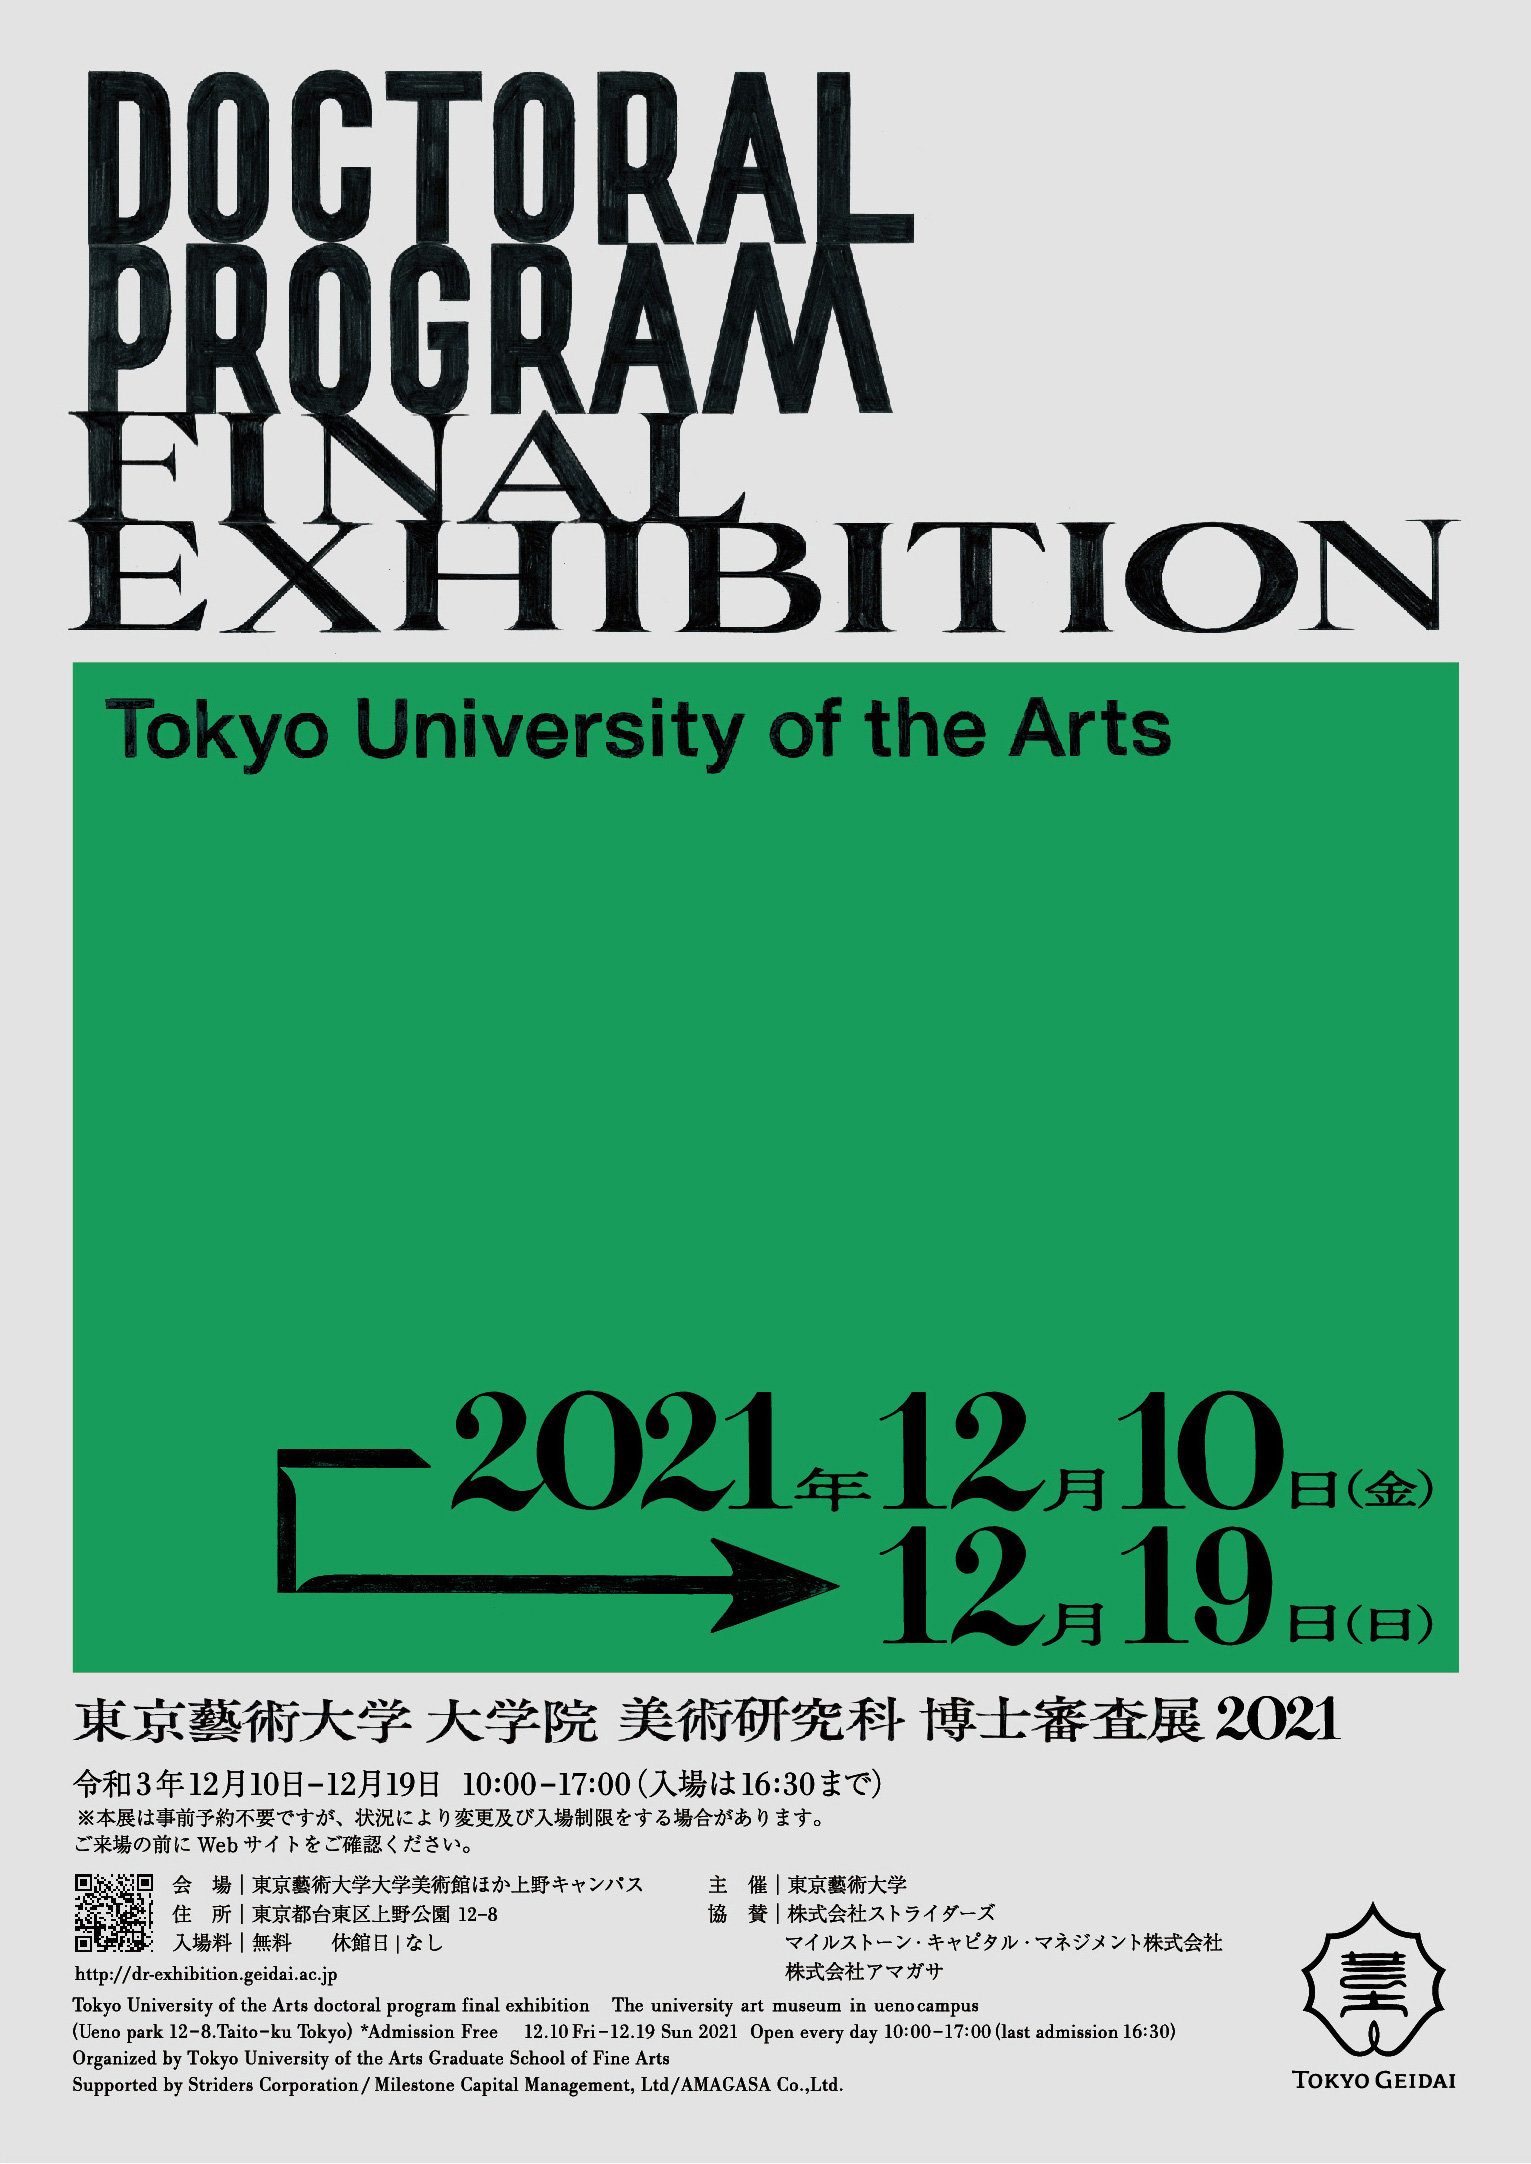 東京藝術大学大学院美術研究科 博士審査展2021